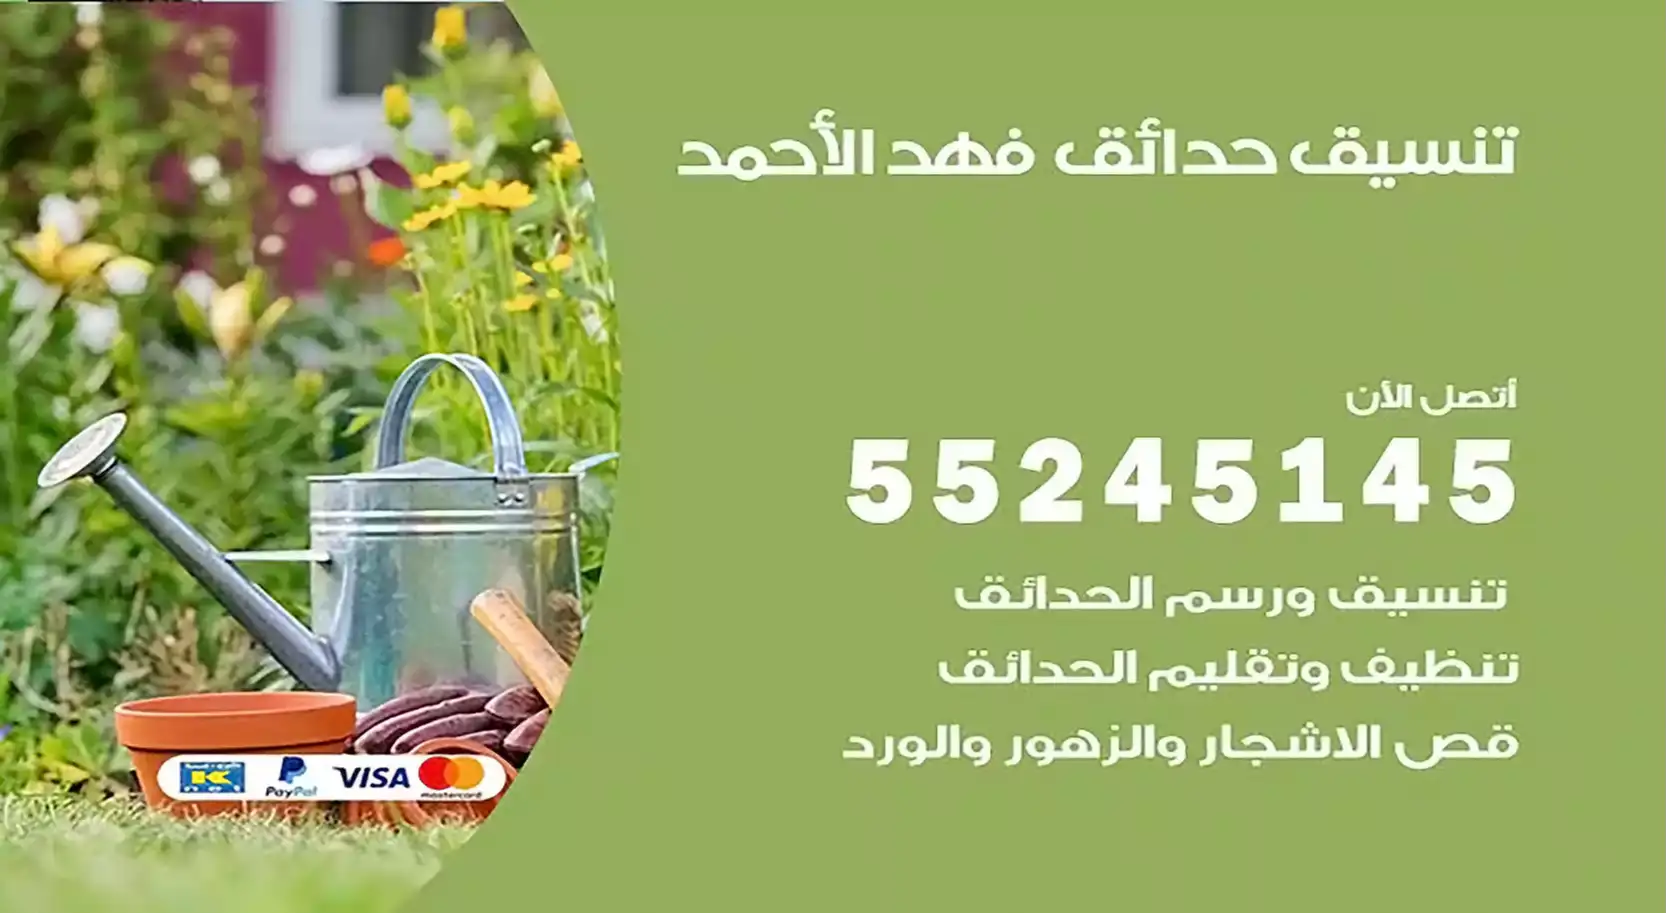 تنسيق حدائق فهد الأحمد 55245145 تصميم و تنسيق حدائق منزلية